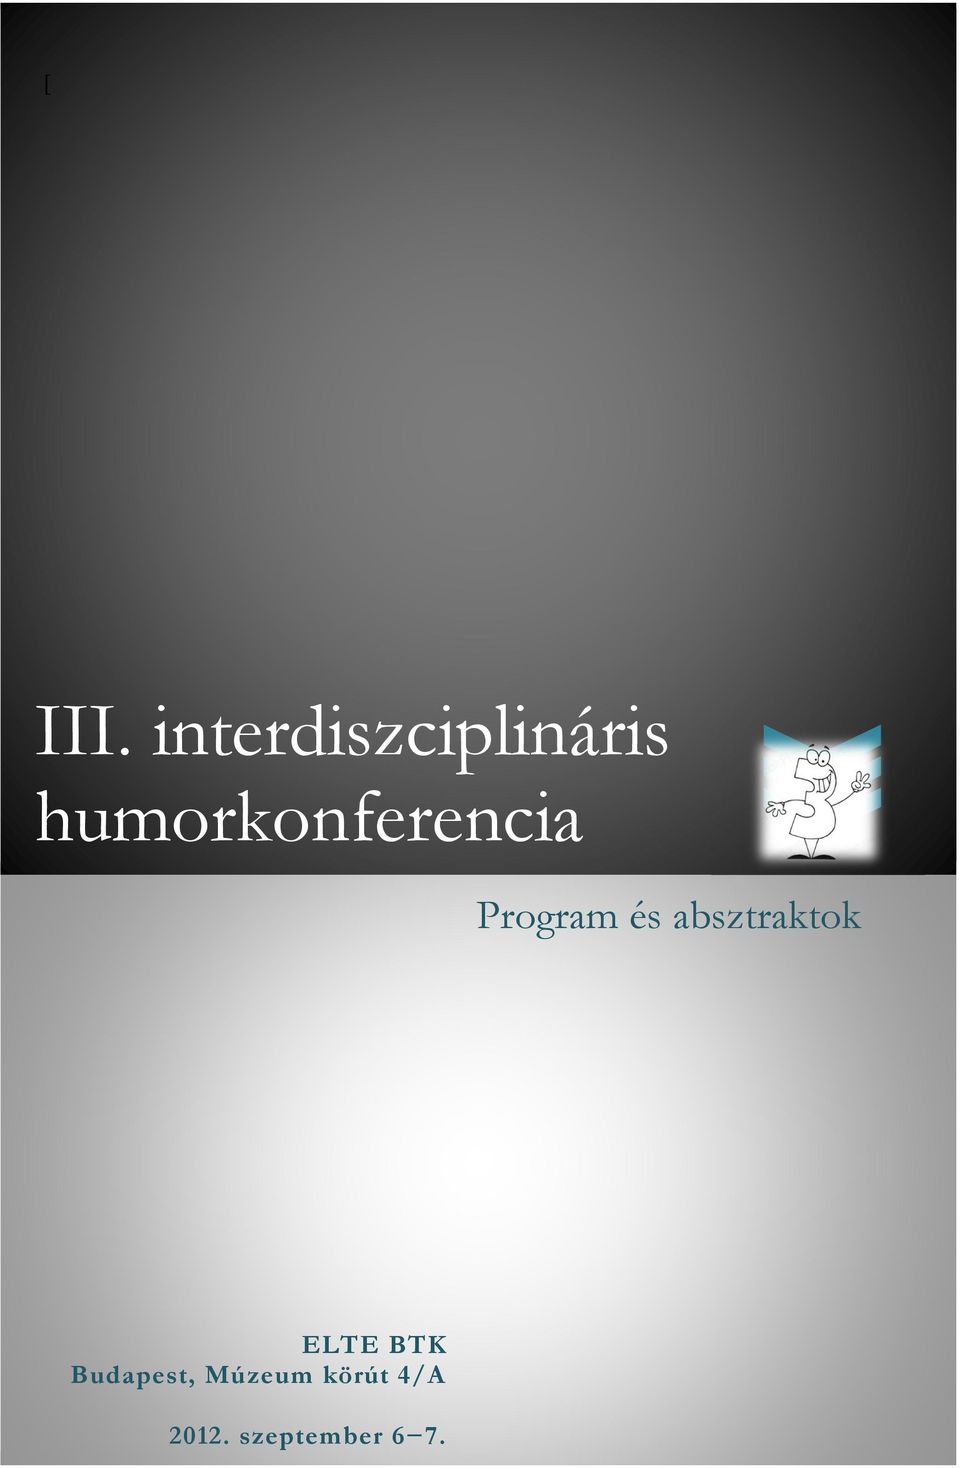 humorkonferencia Program és